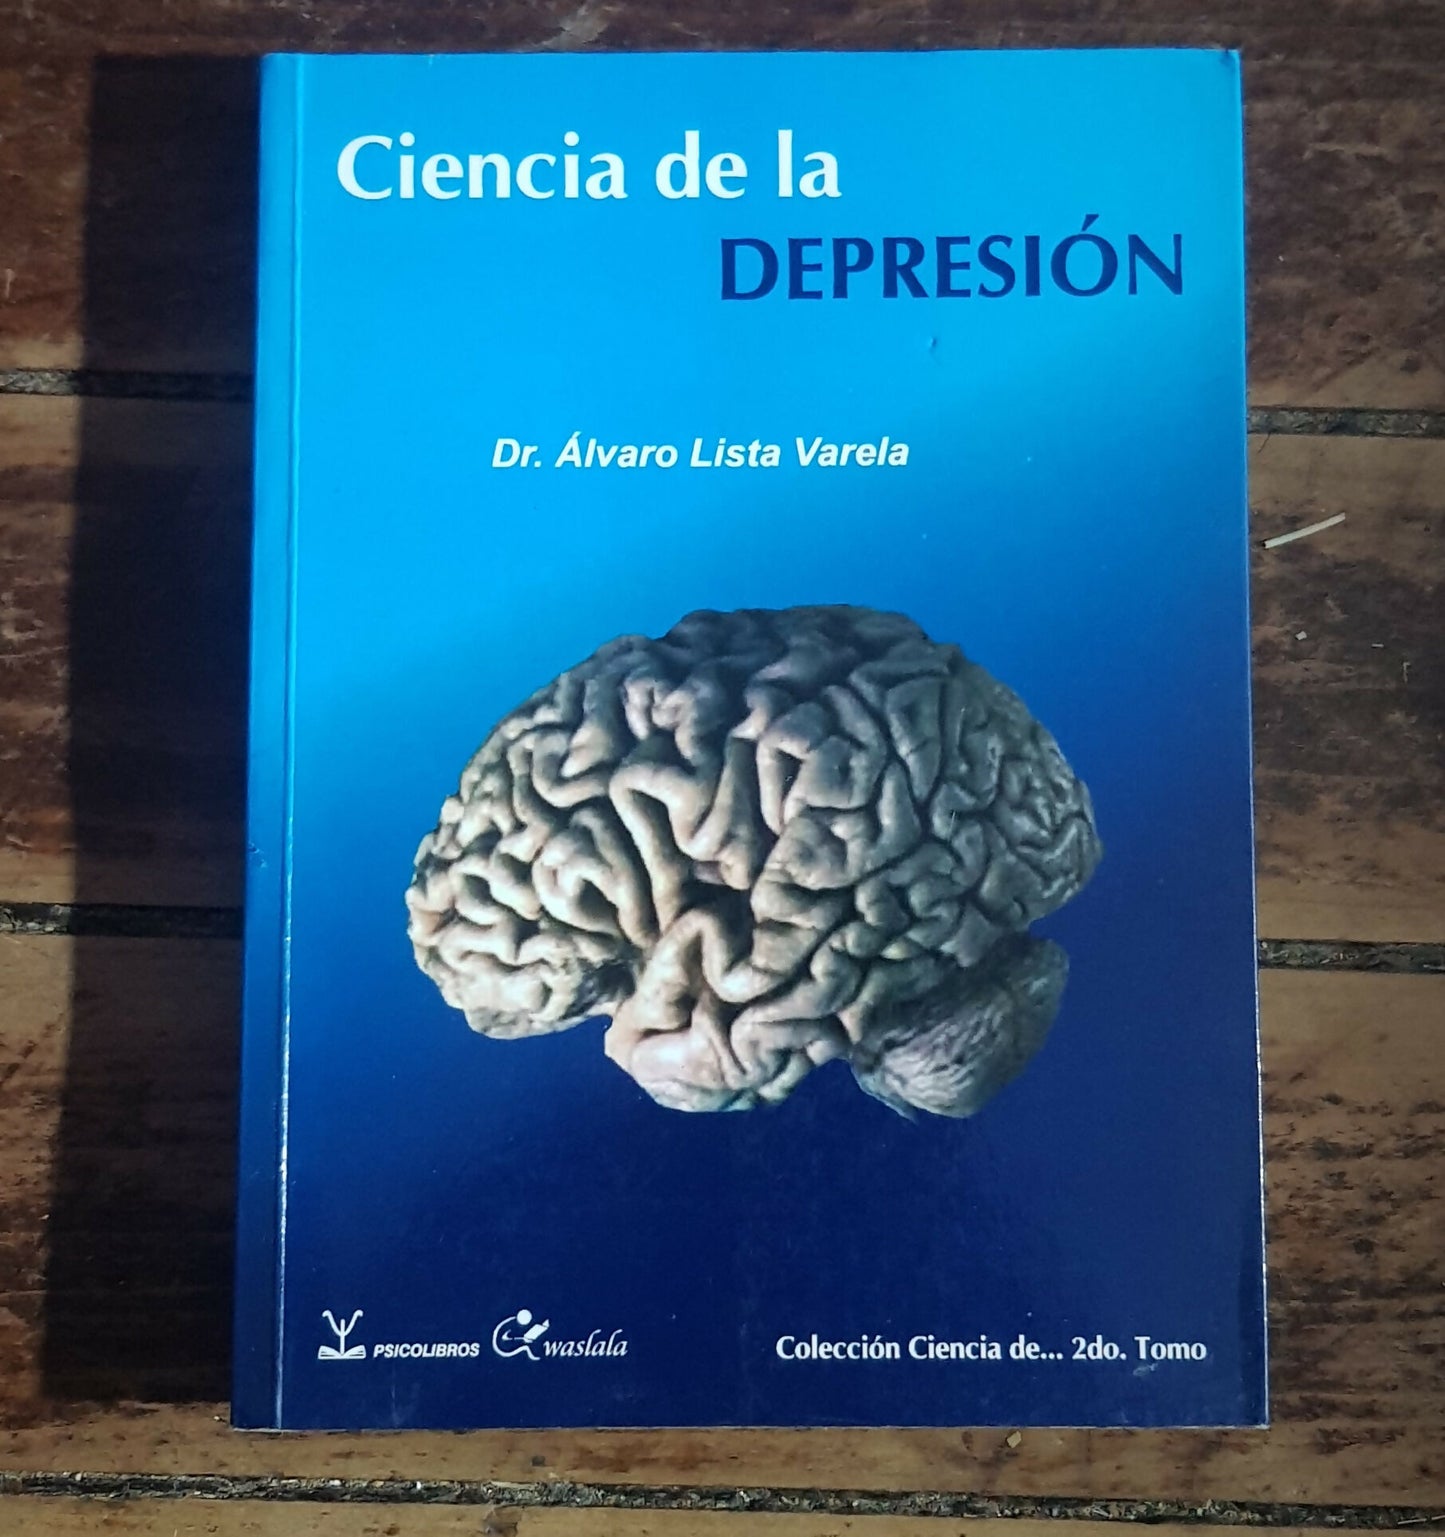 Libro Ciencia de la Depresión del Dr. Alvaro Lista Varela